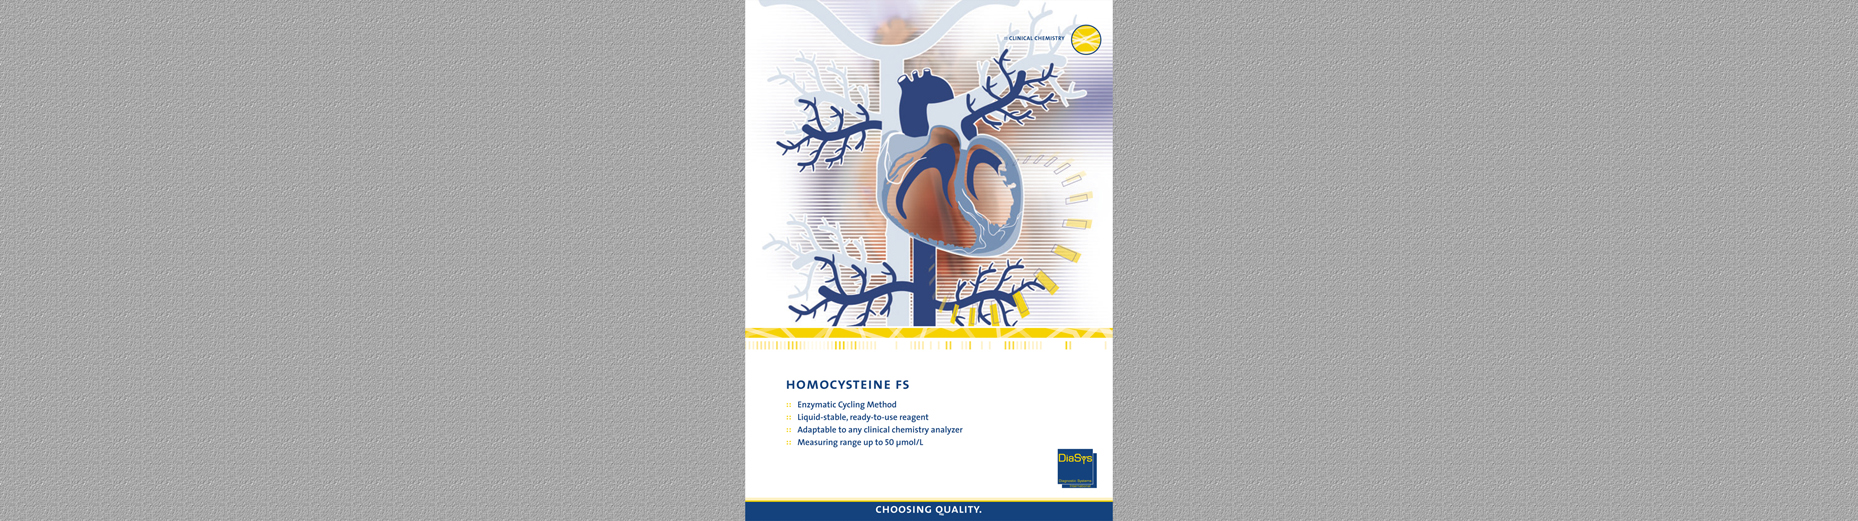 Homocysteine FS Brochure